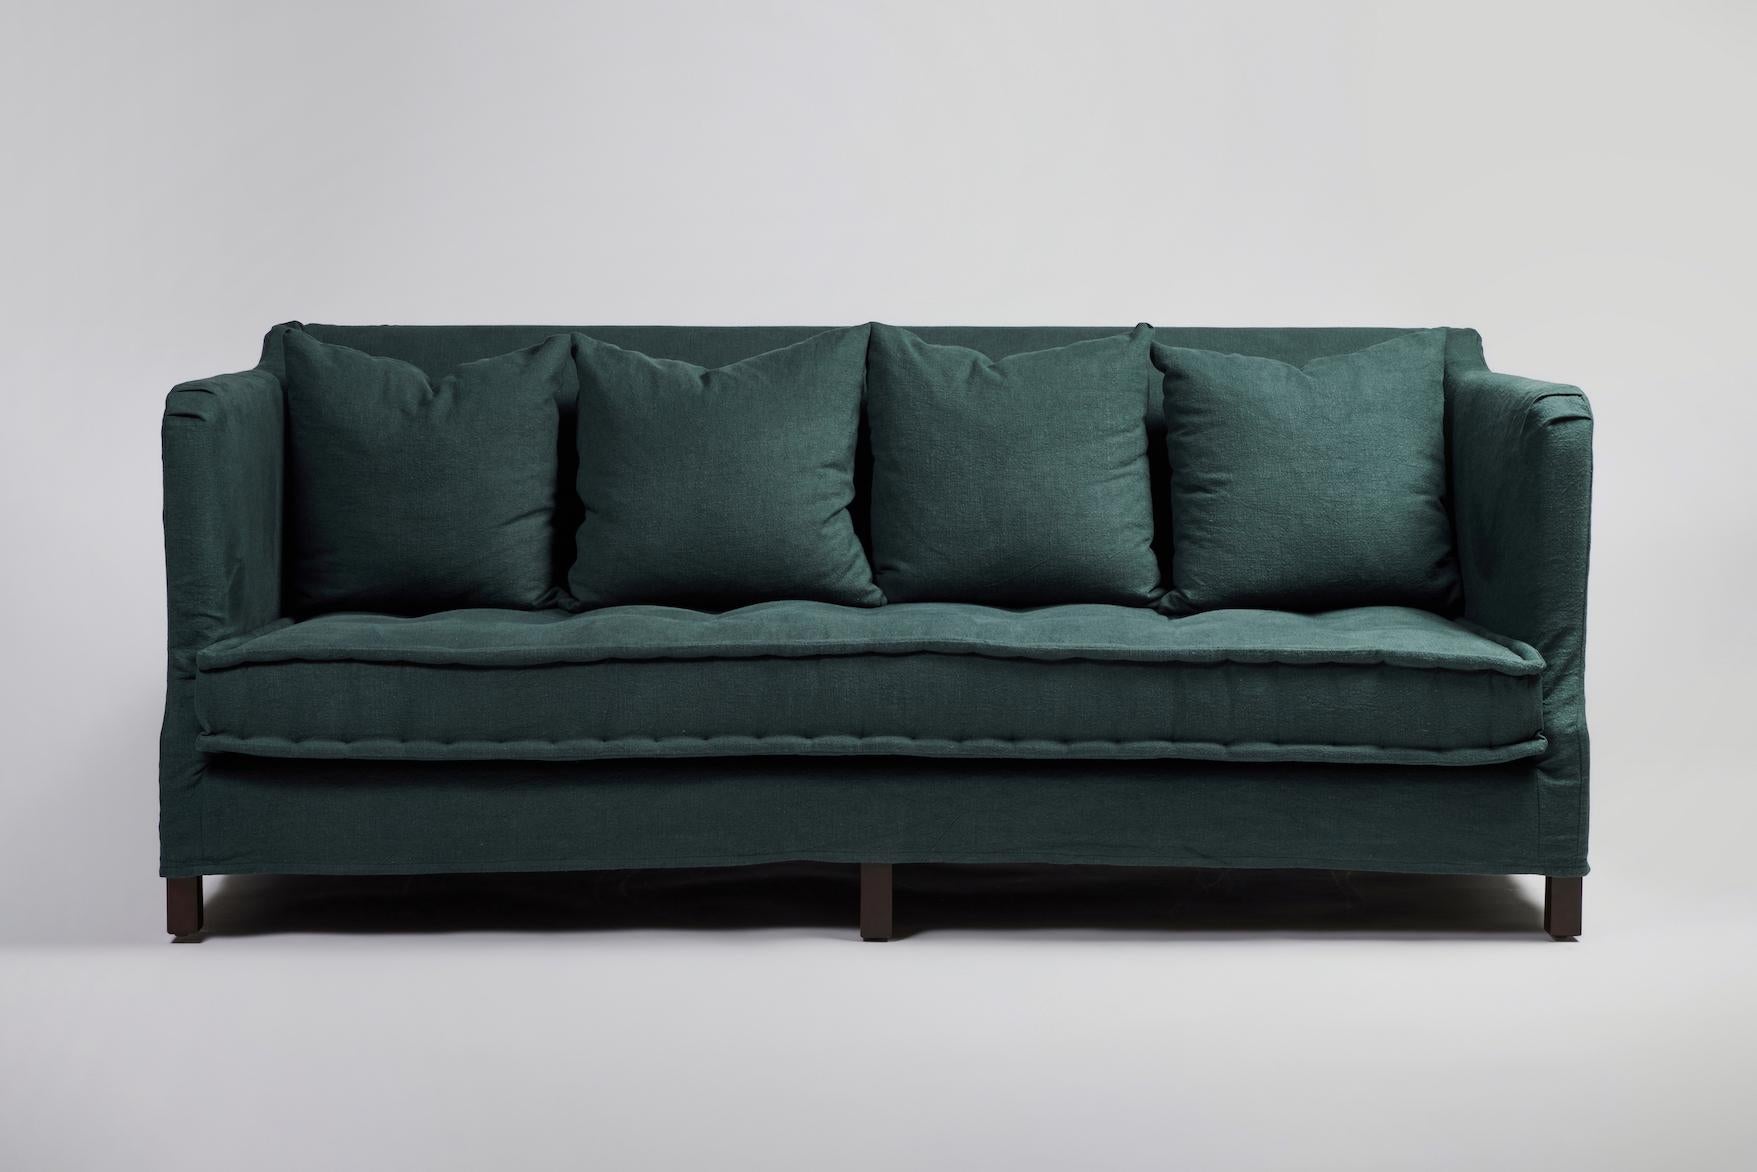 Das All Day Sofa von Martin & Brockett verfügt über einen losen Bezug und eine tiefe, französisch anmutende Sitzfläche, auf der man endlos faulenzen möchte. Kann auch mit loser Sitzbank bestellt werden.

B 84 in. x T 40 in. x H 34 in.

Wird nur als